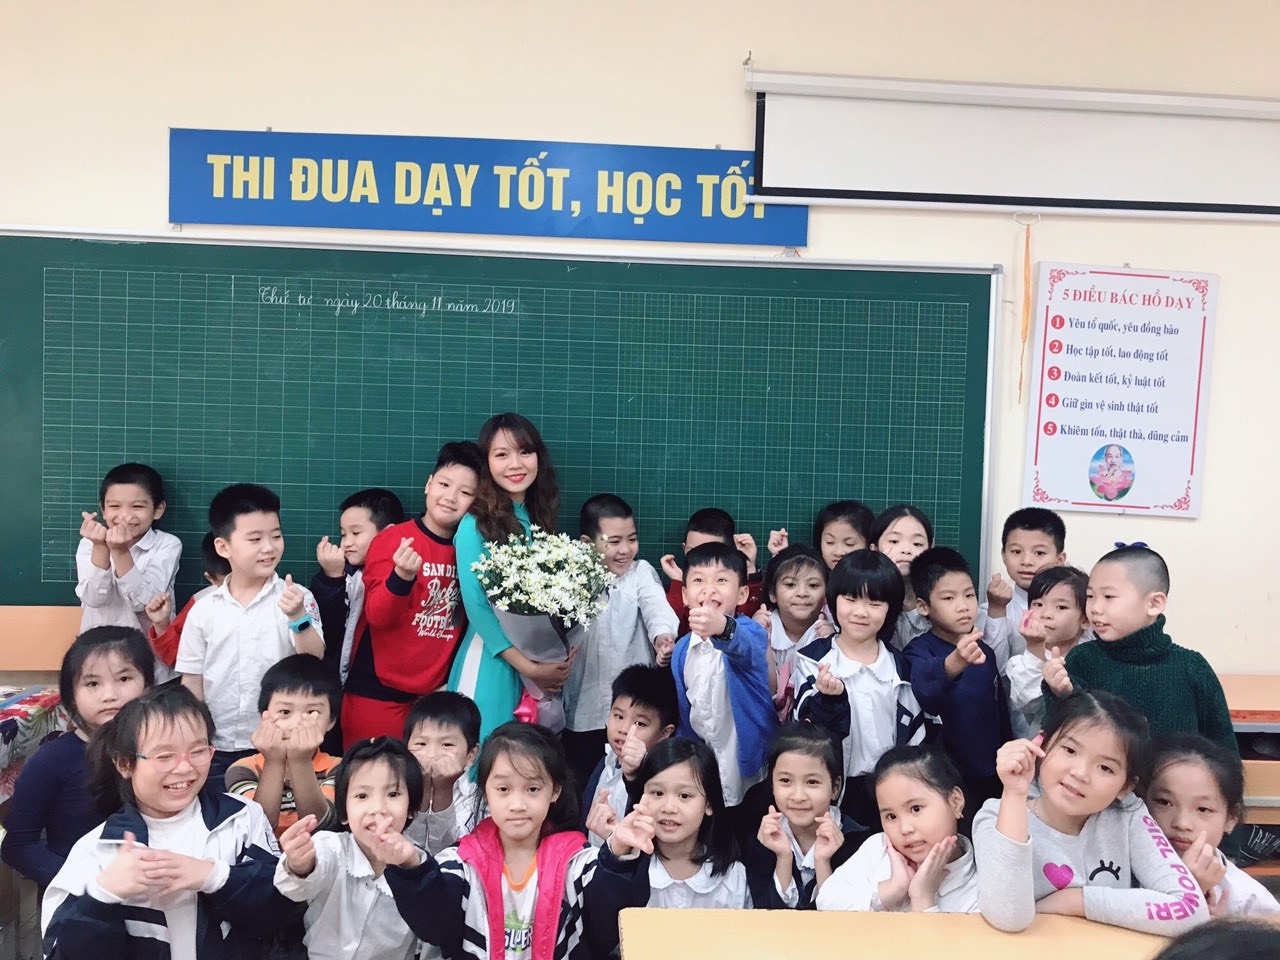 Cô giáo Nguyễn Phương Anh: Cô giáo Nguyễn Phương Anh là một người thầy gương mẫu với tình yêu và nhiệt huyết trong việc giảng dạy. Bạn sẽ cảm thấy vinh dự khi có cơ hội được học từ một người giáo viên tâm huyết như cô ấy.